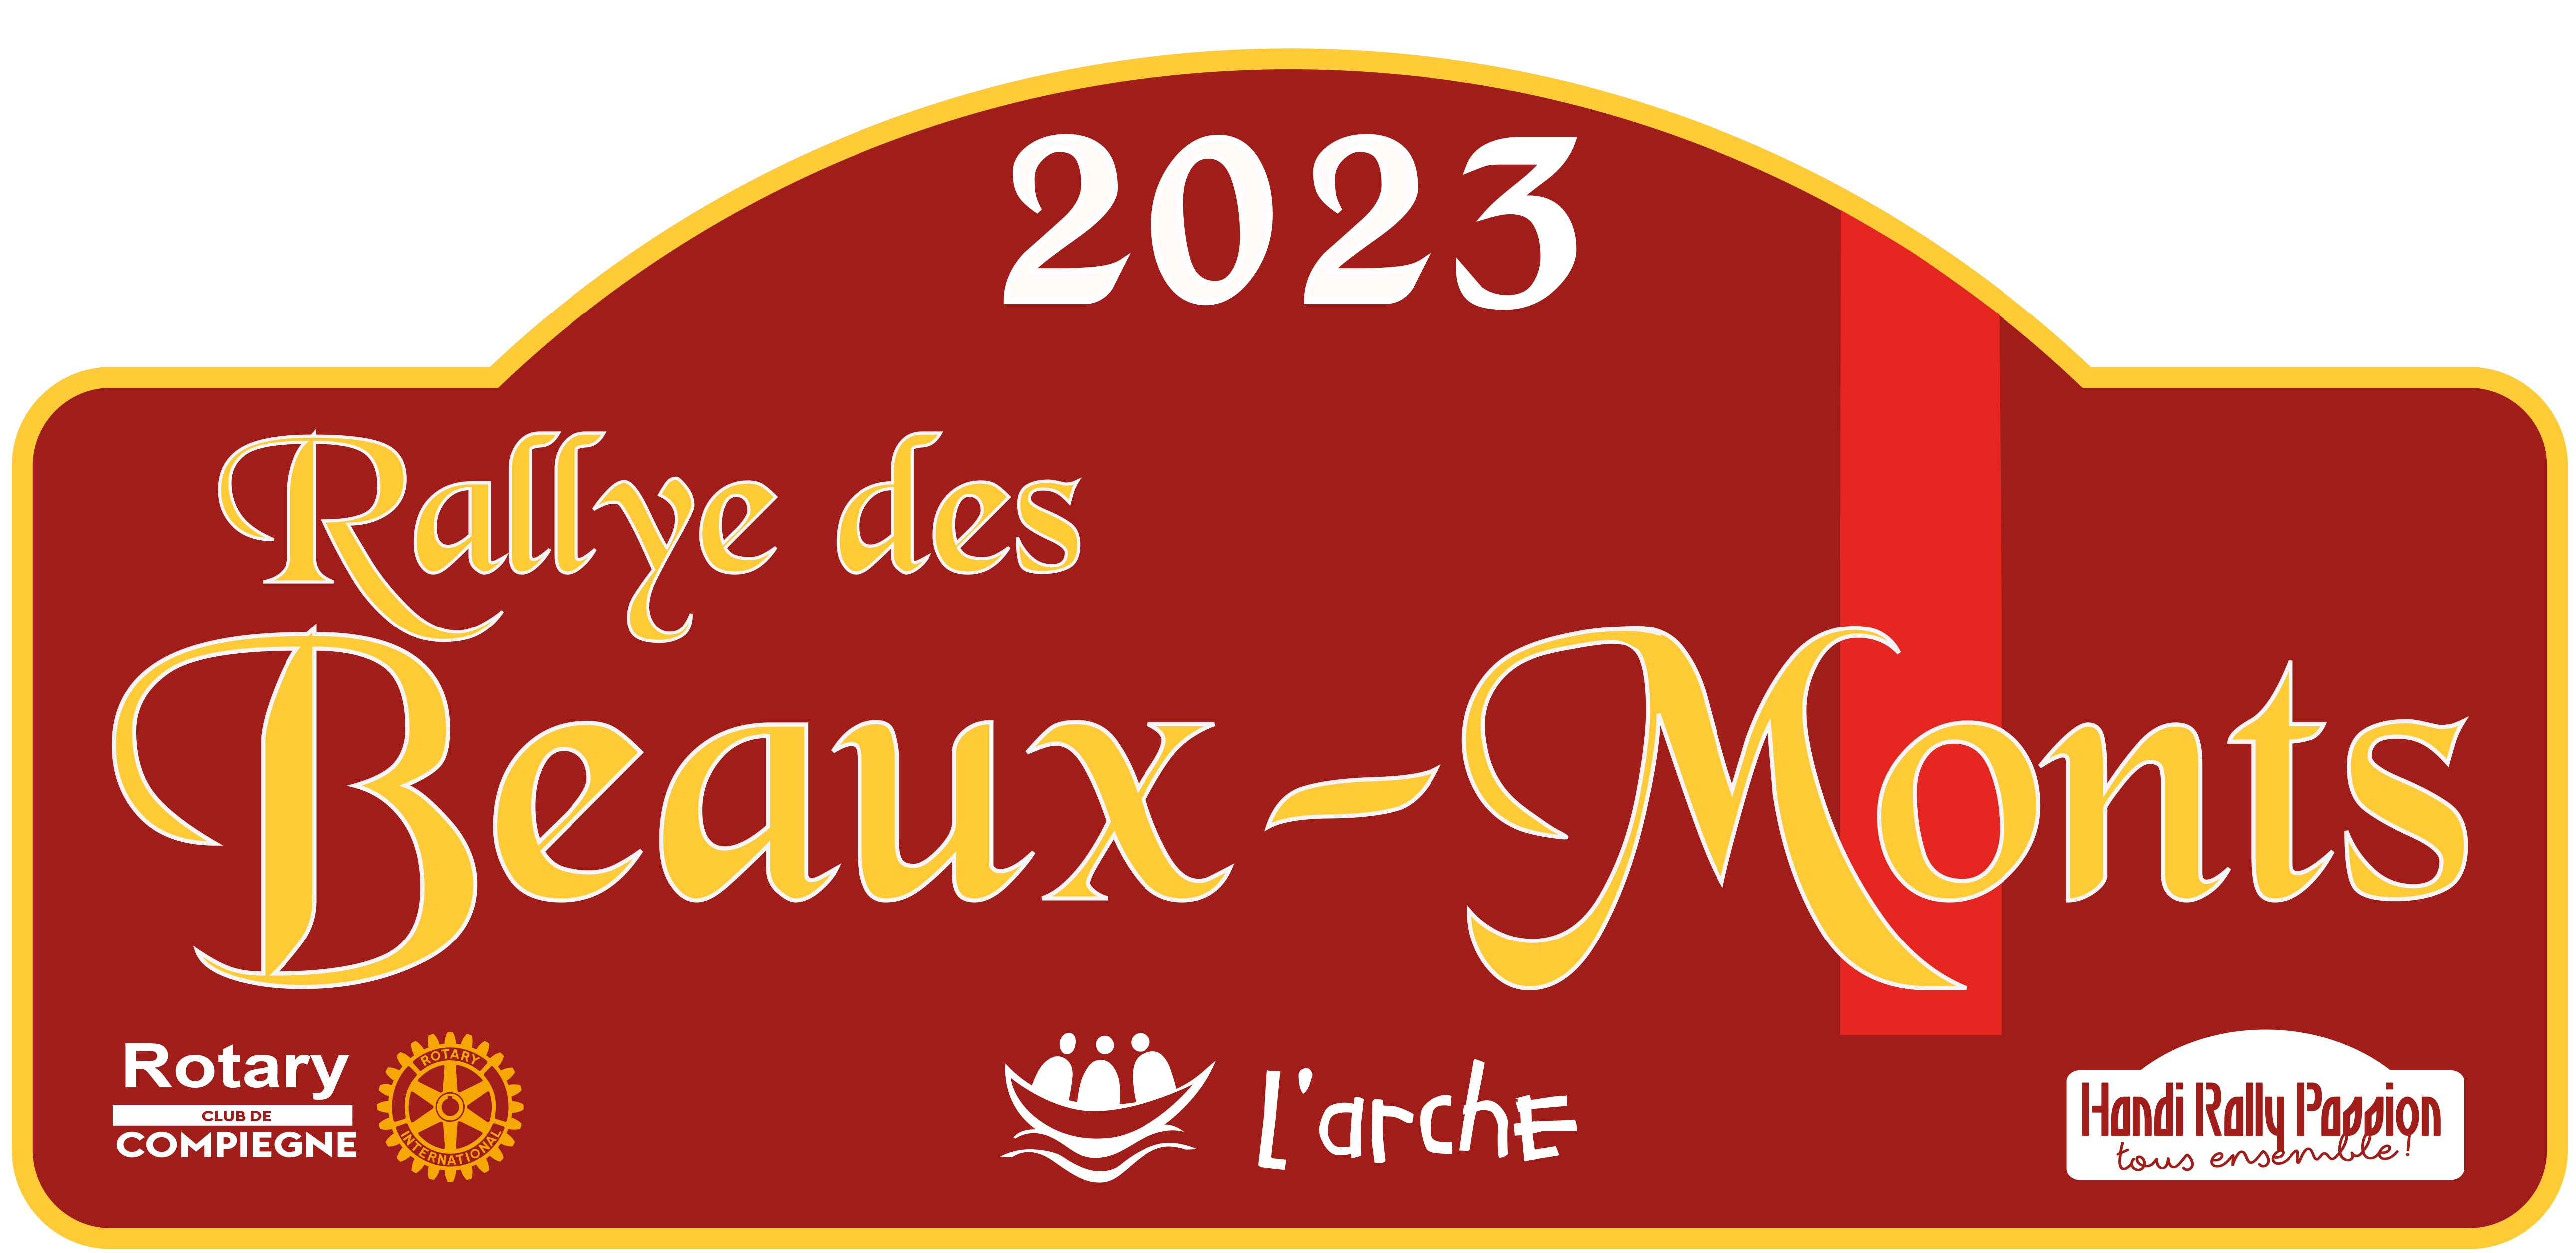 Rallye des Beaux-Monts_le 9 septembre 2023